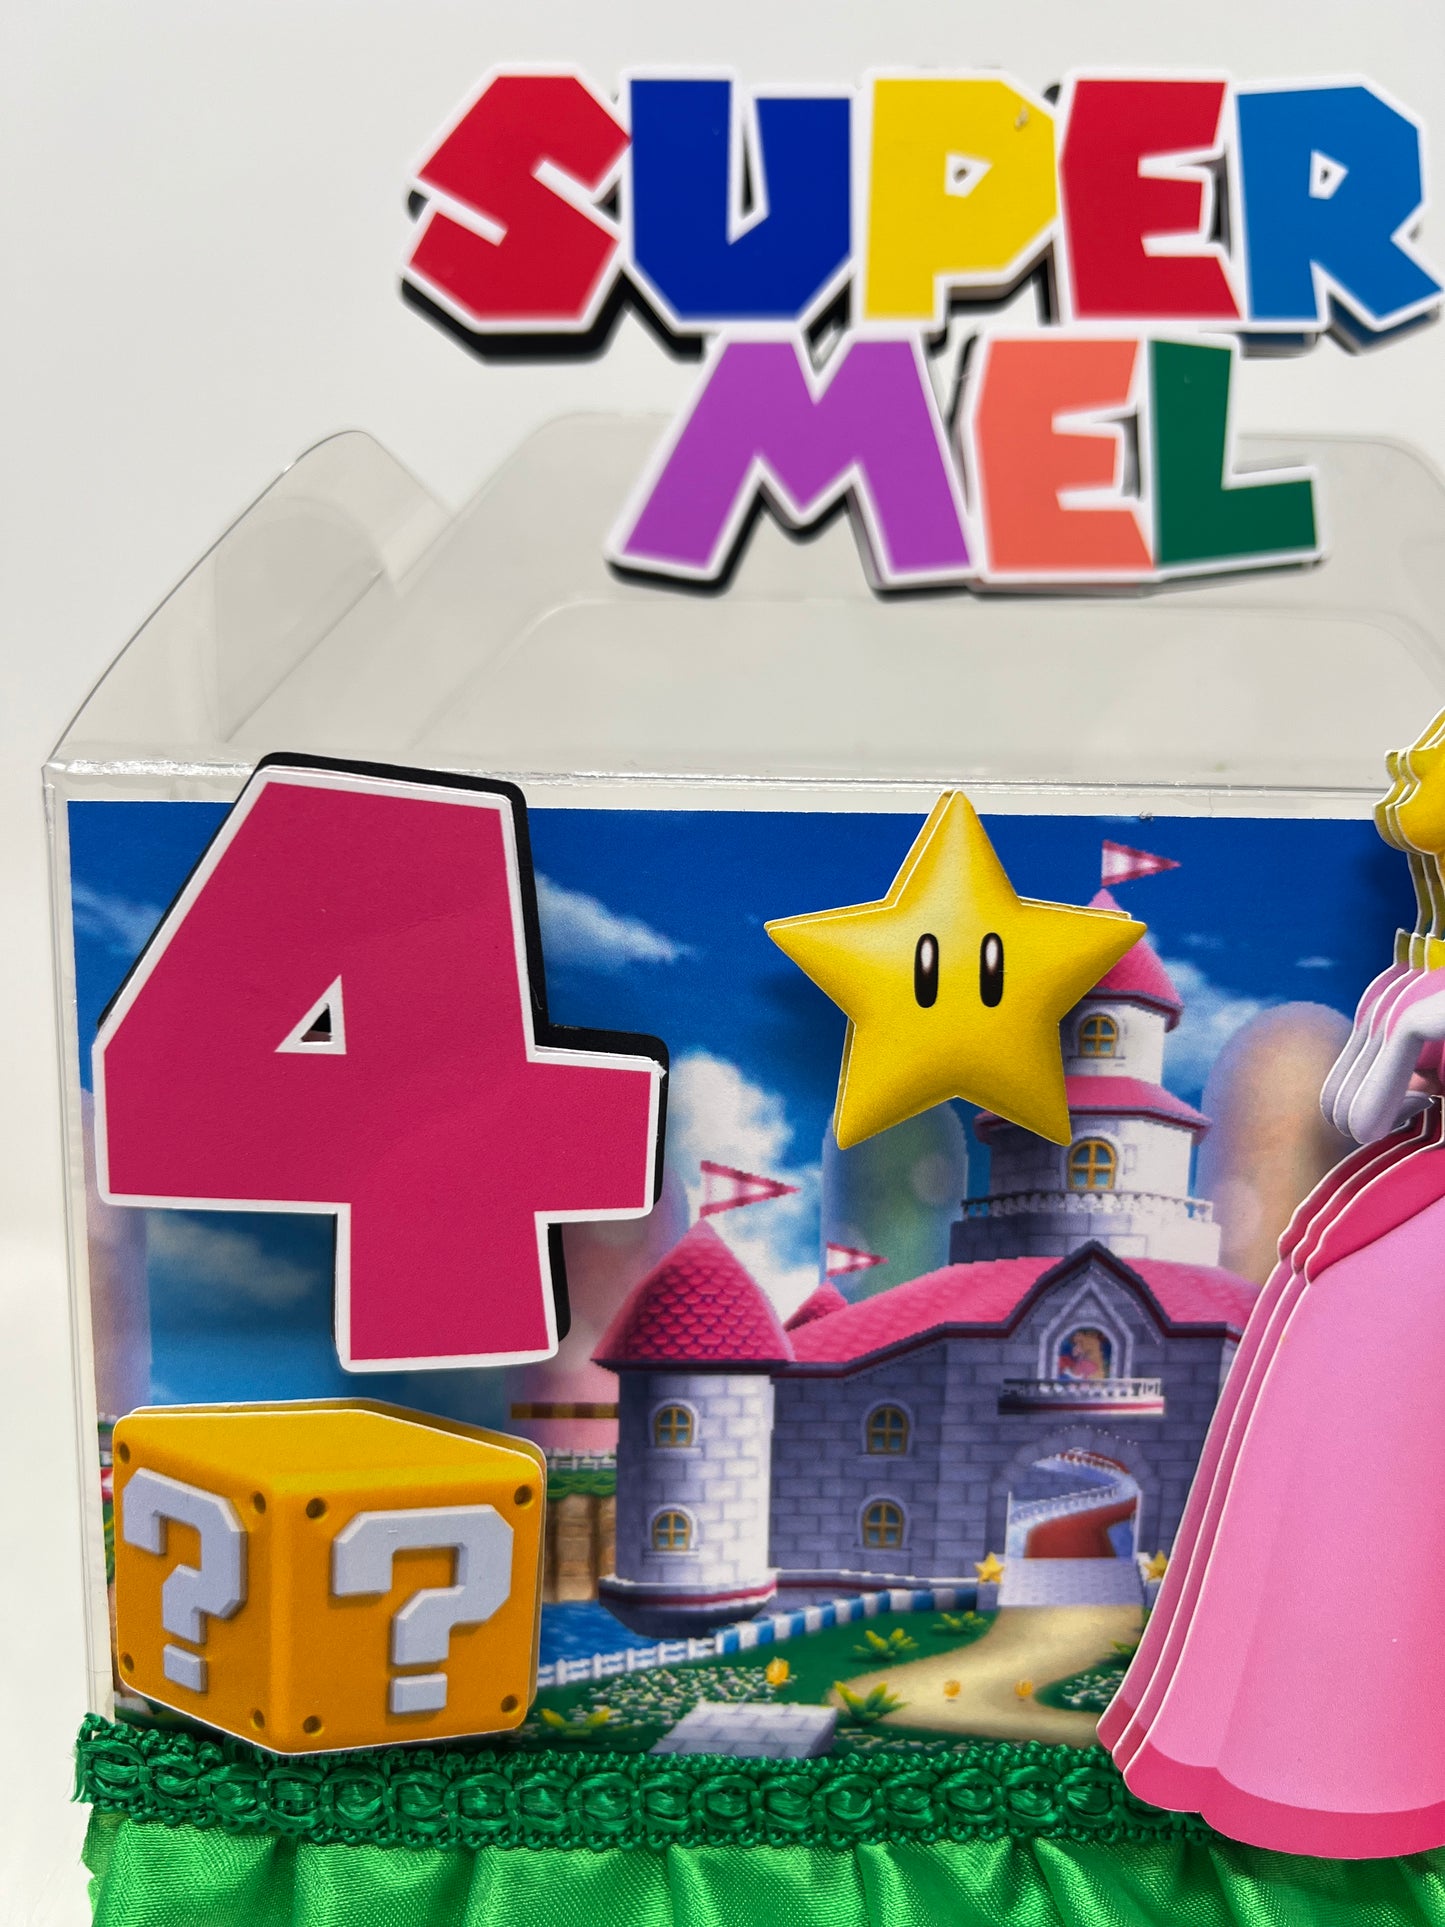 princess peach Birthday, Princess Peach Gable box, Mario theme